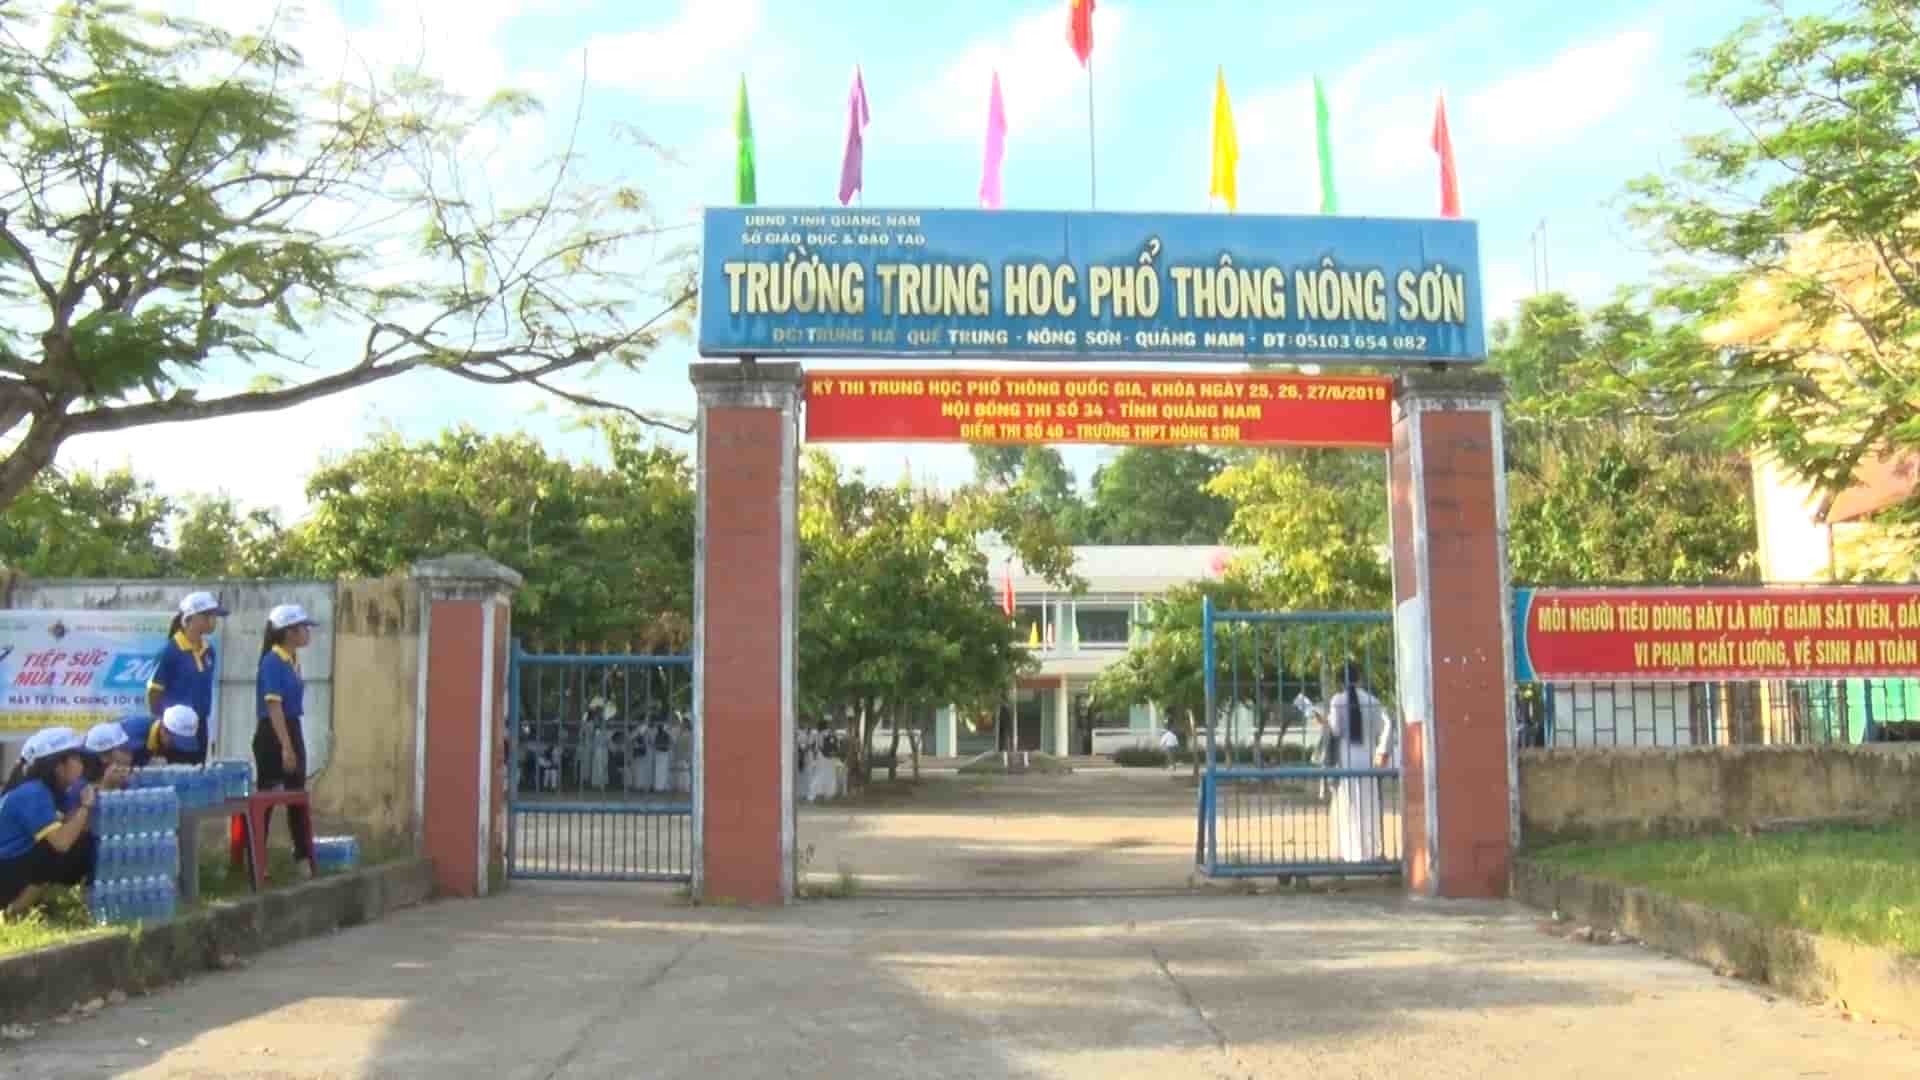 Đánh Giá Trường THPT Nông Sơn - Quảng Nam Có Tốt Không?